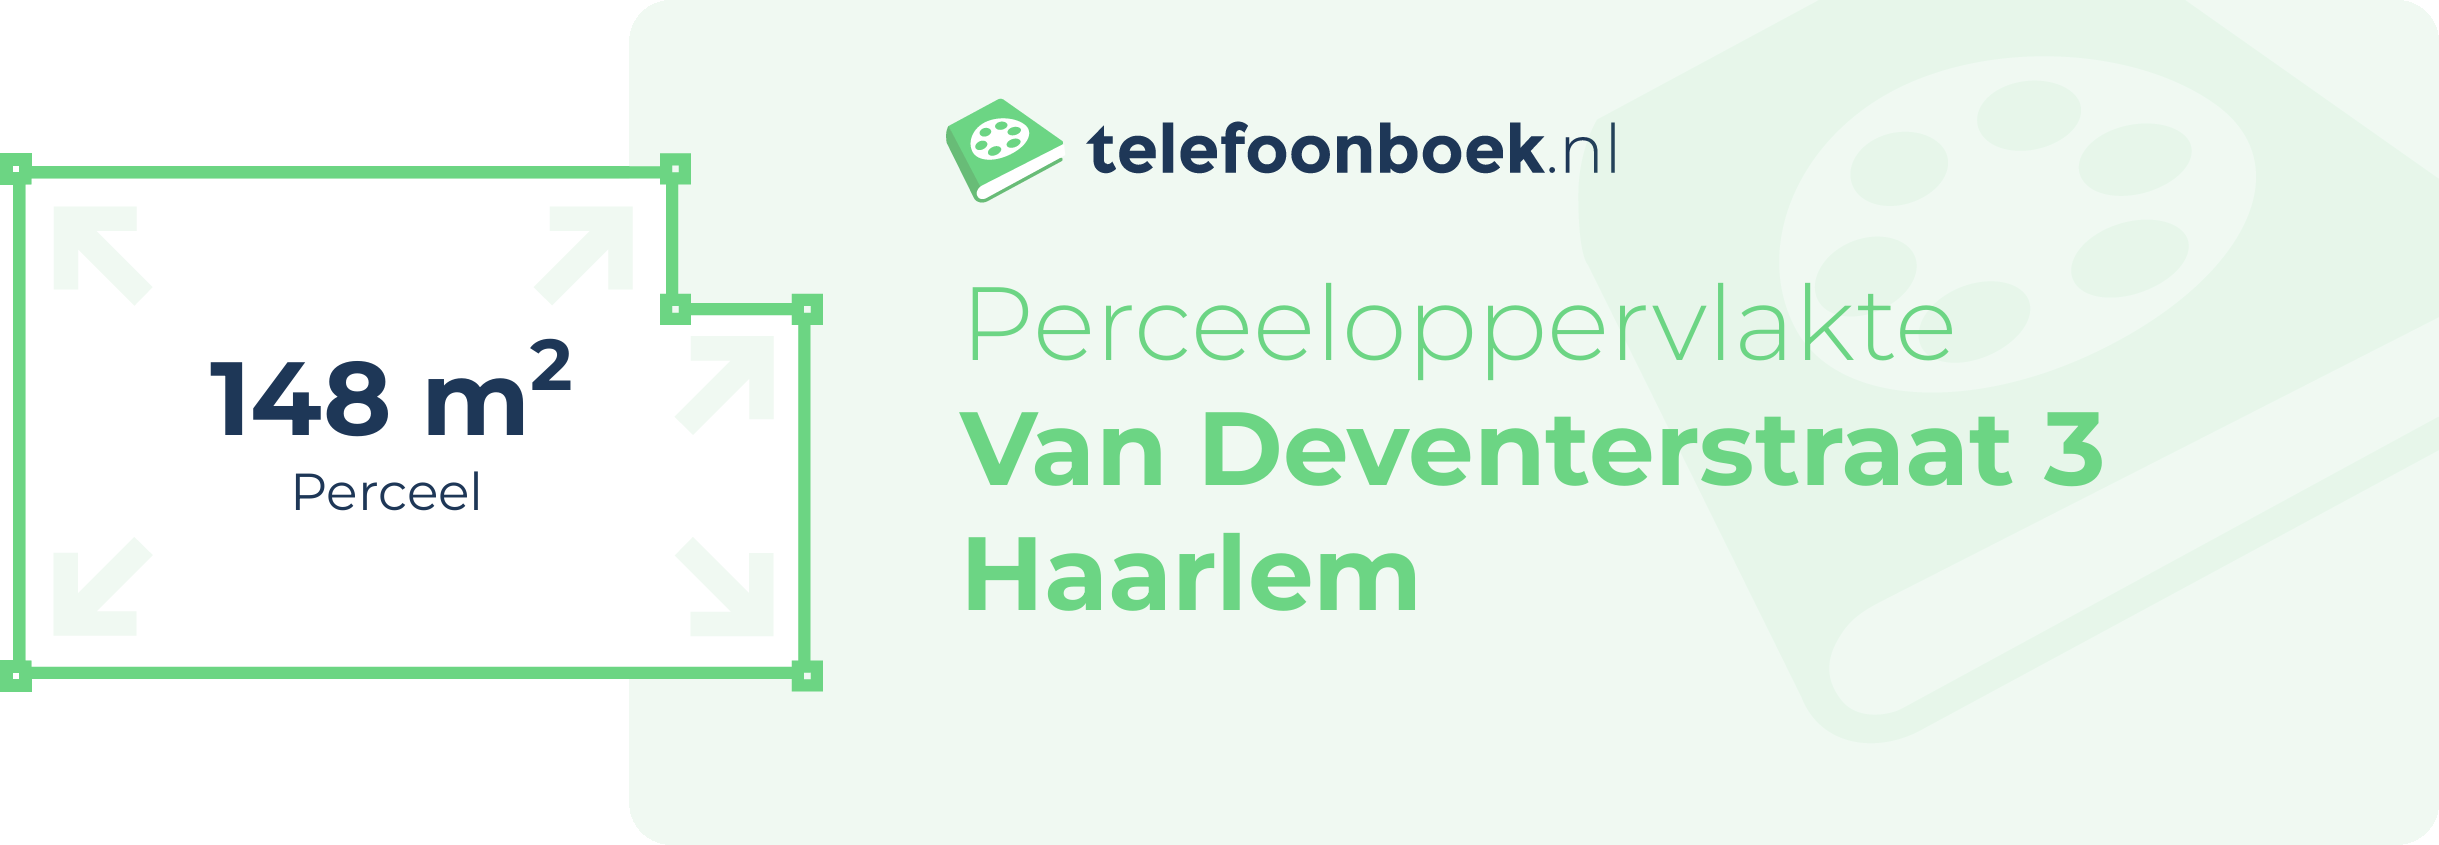 Perceeloppervlakte Van Deventerstraat 3 Haarlem